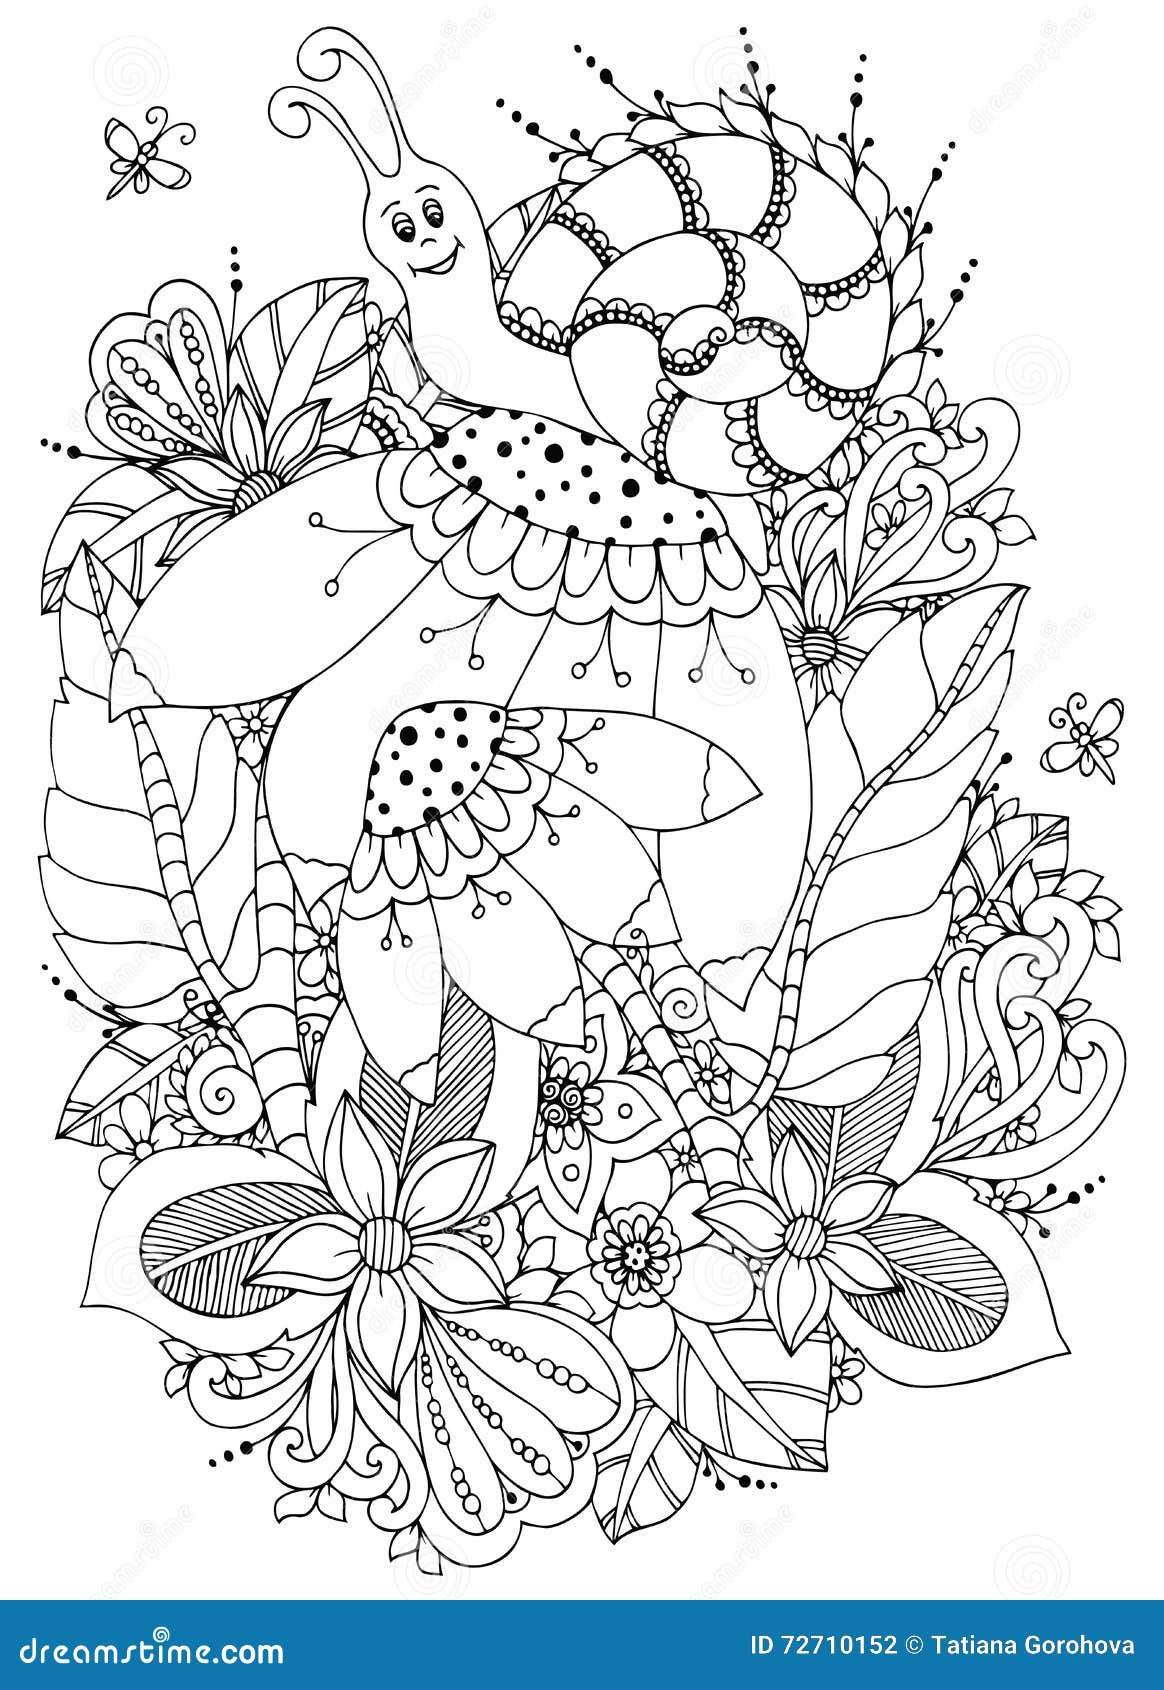 Illustrazione Zen Tangle Snail di vettore sui fiori Disegno di scarabocchio Anti sforzo del libro da colorare per gli adulti Bian